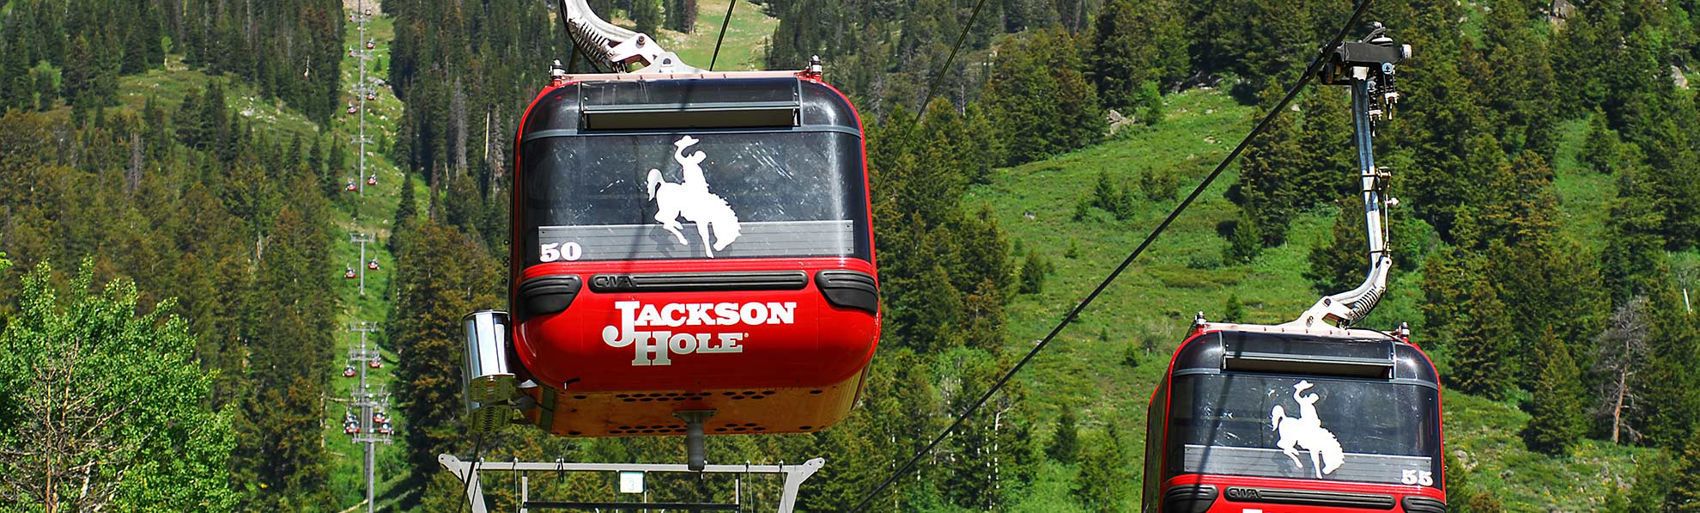 Jackson Hole Gondola